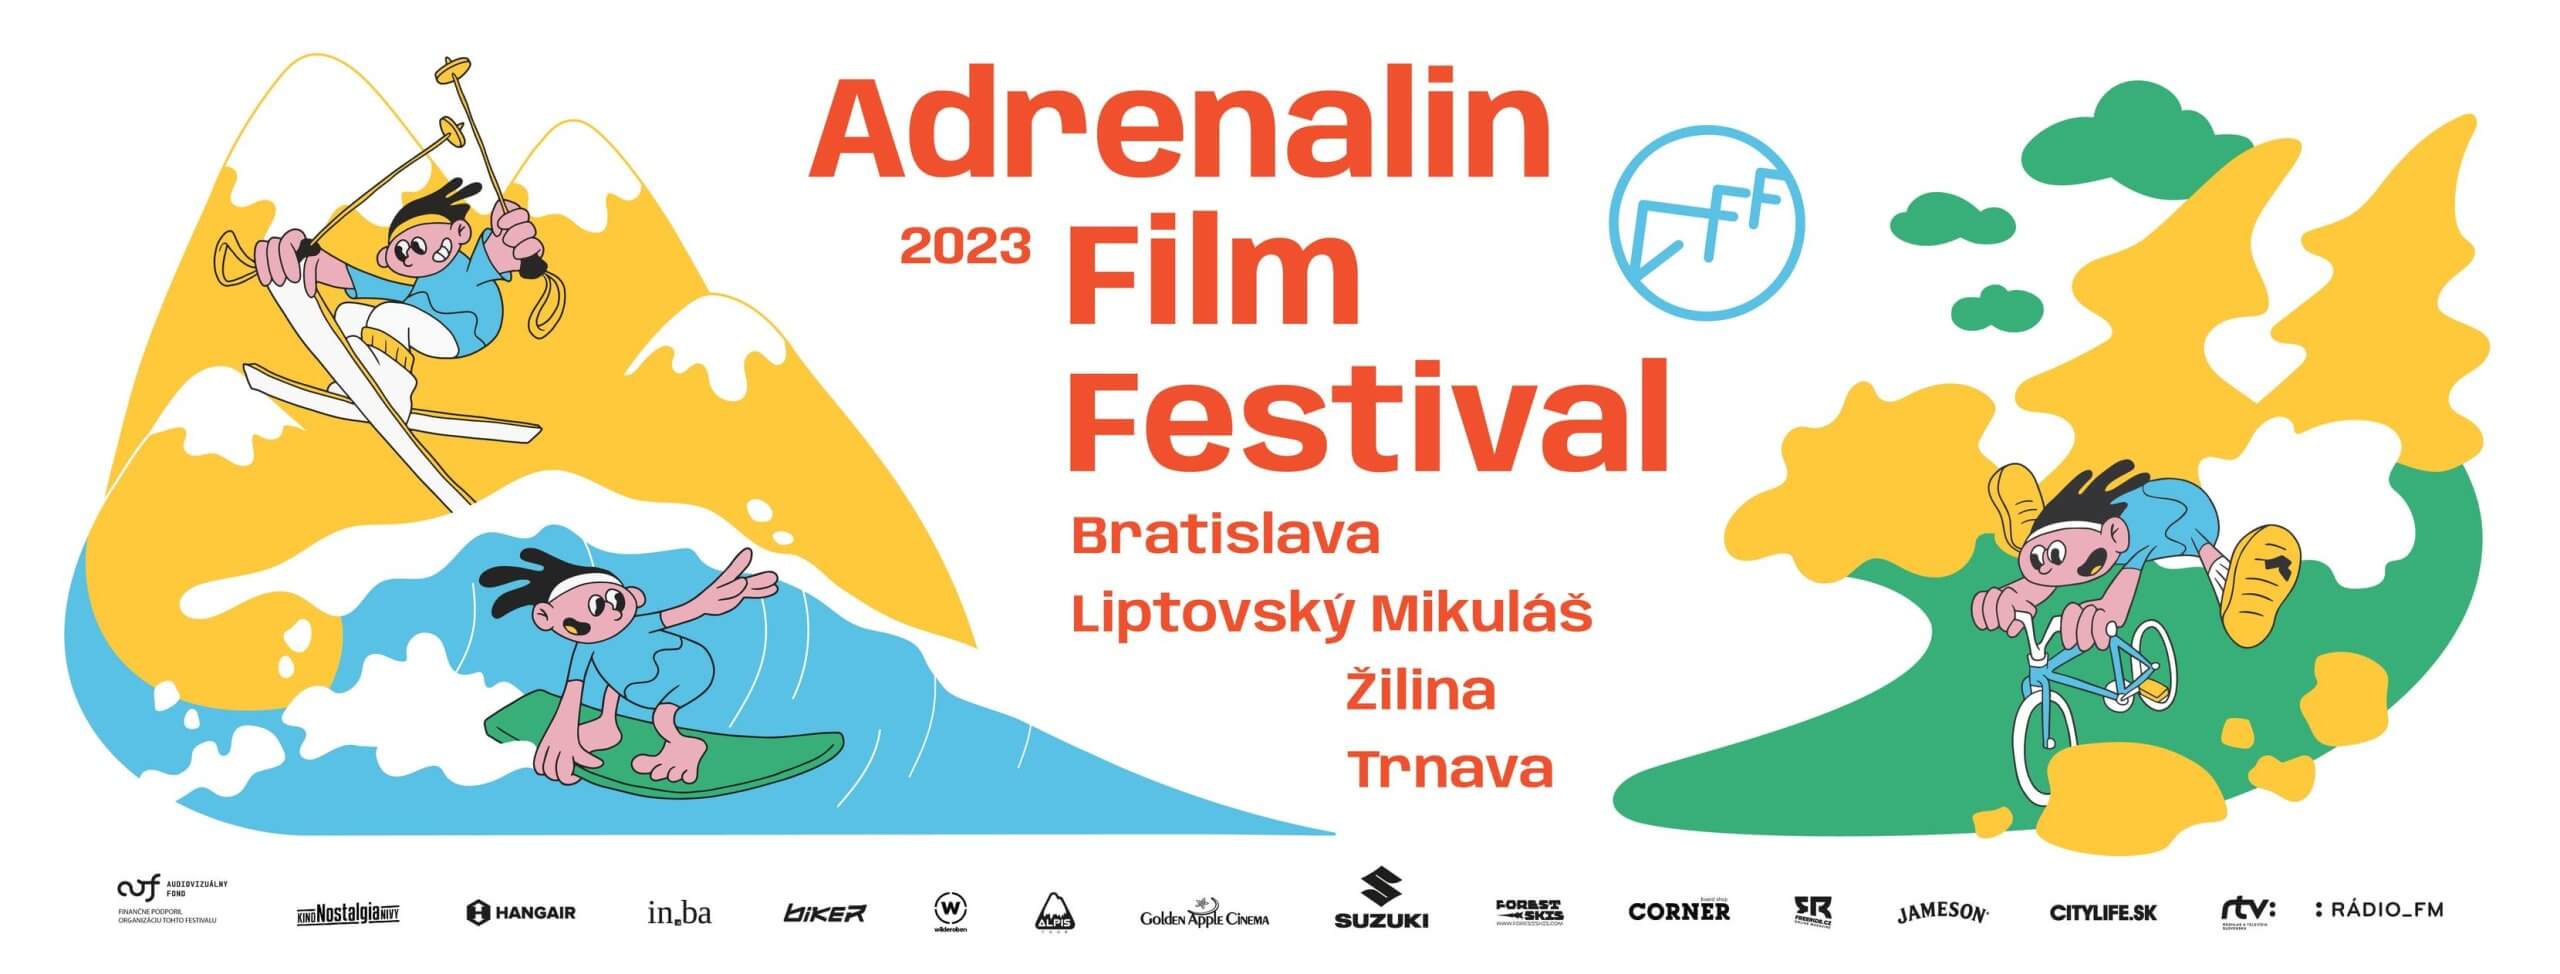 Adrenalin Film Festival 2023